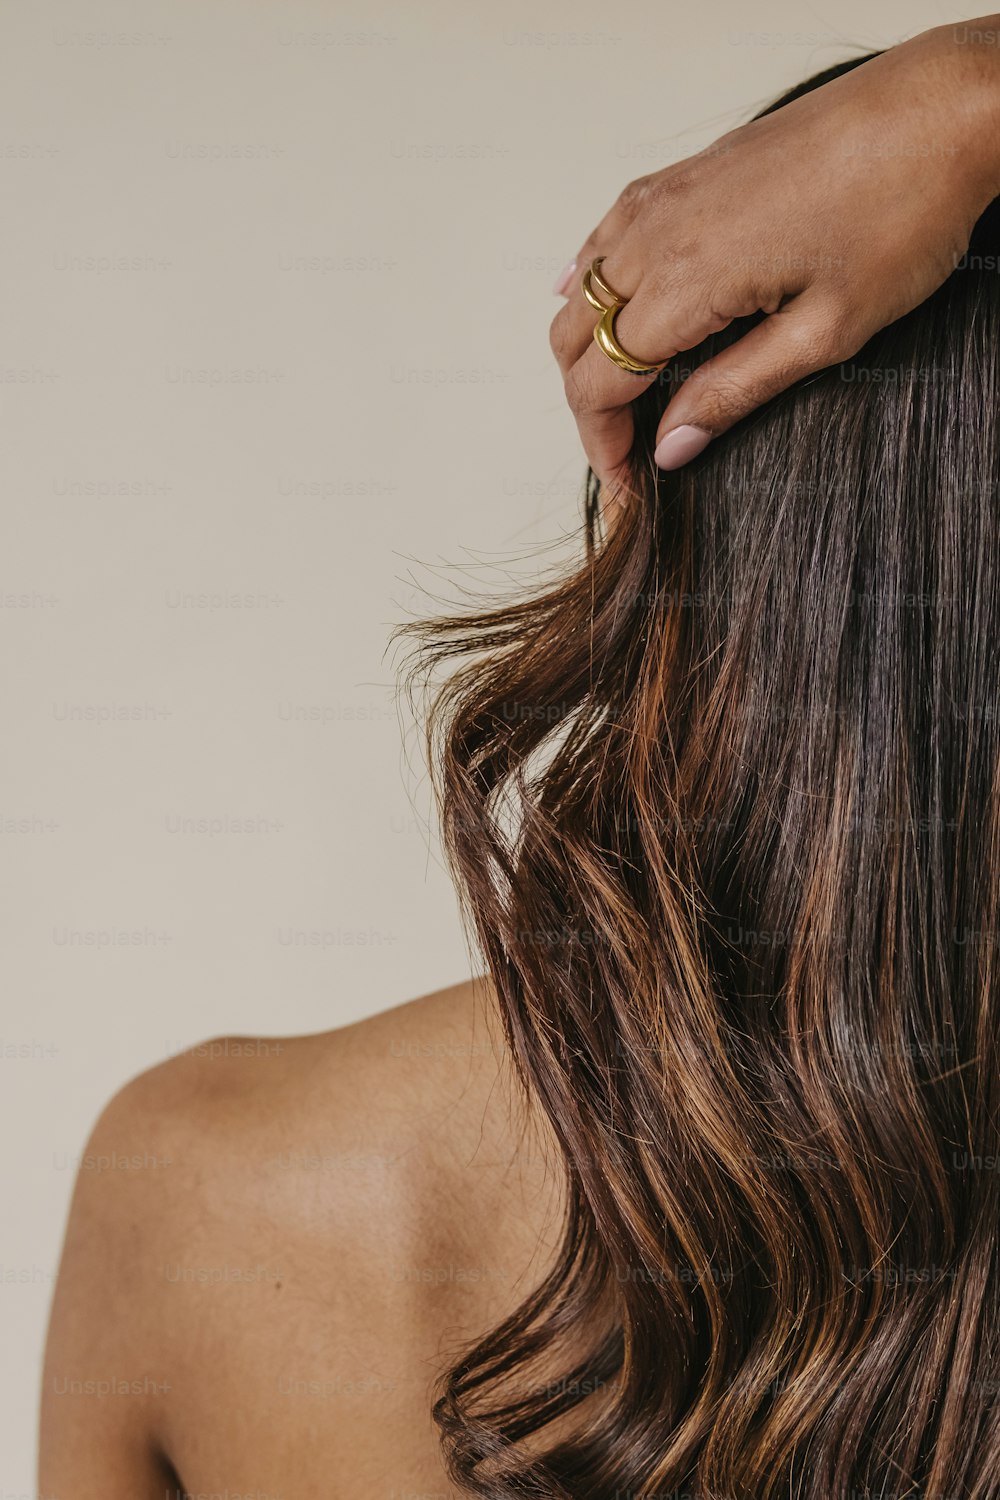 eine Frau mit langen braunen Haaren und einem goldenen Ring